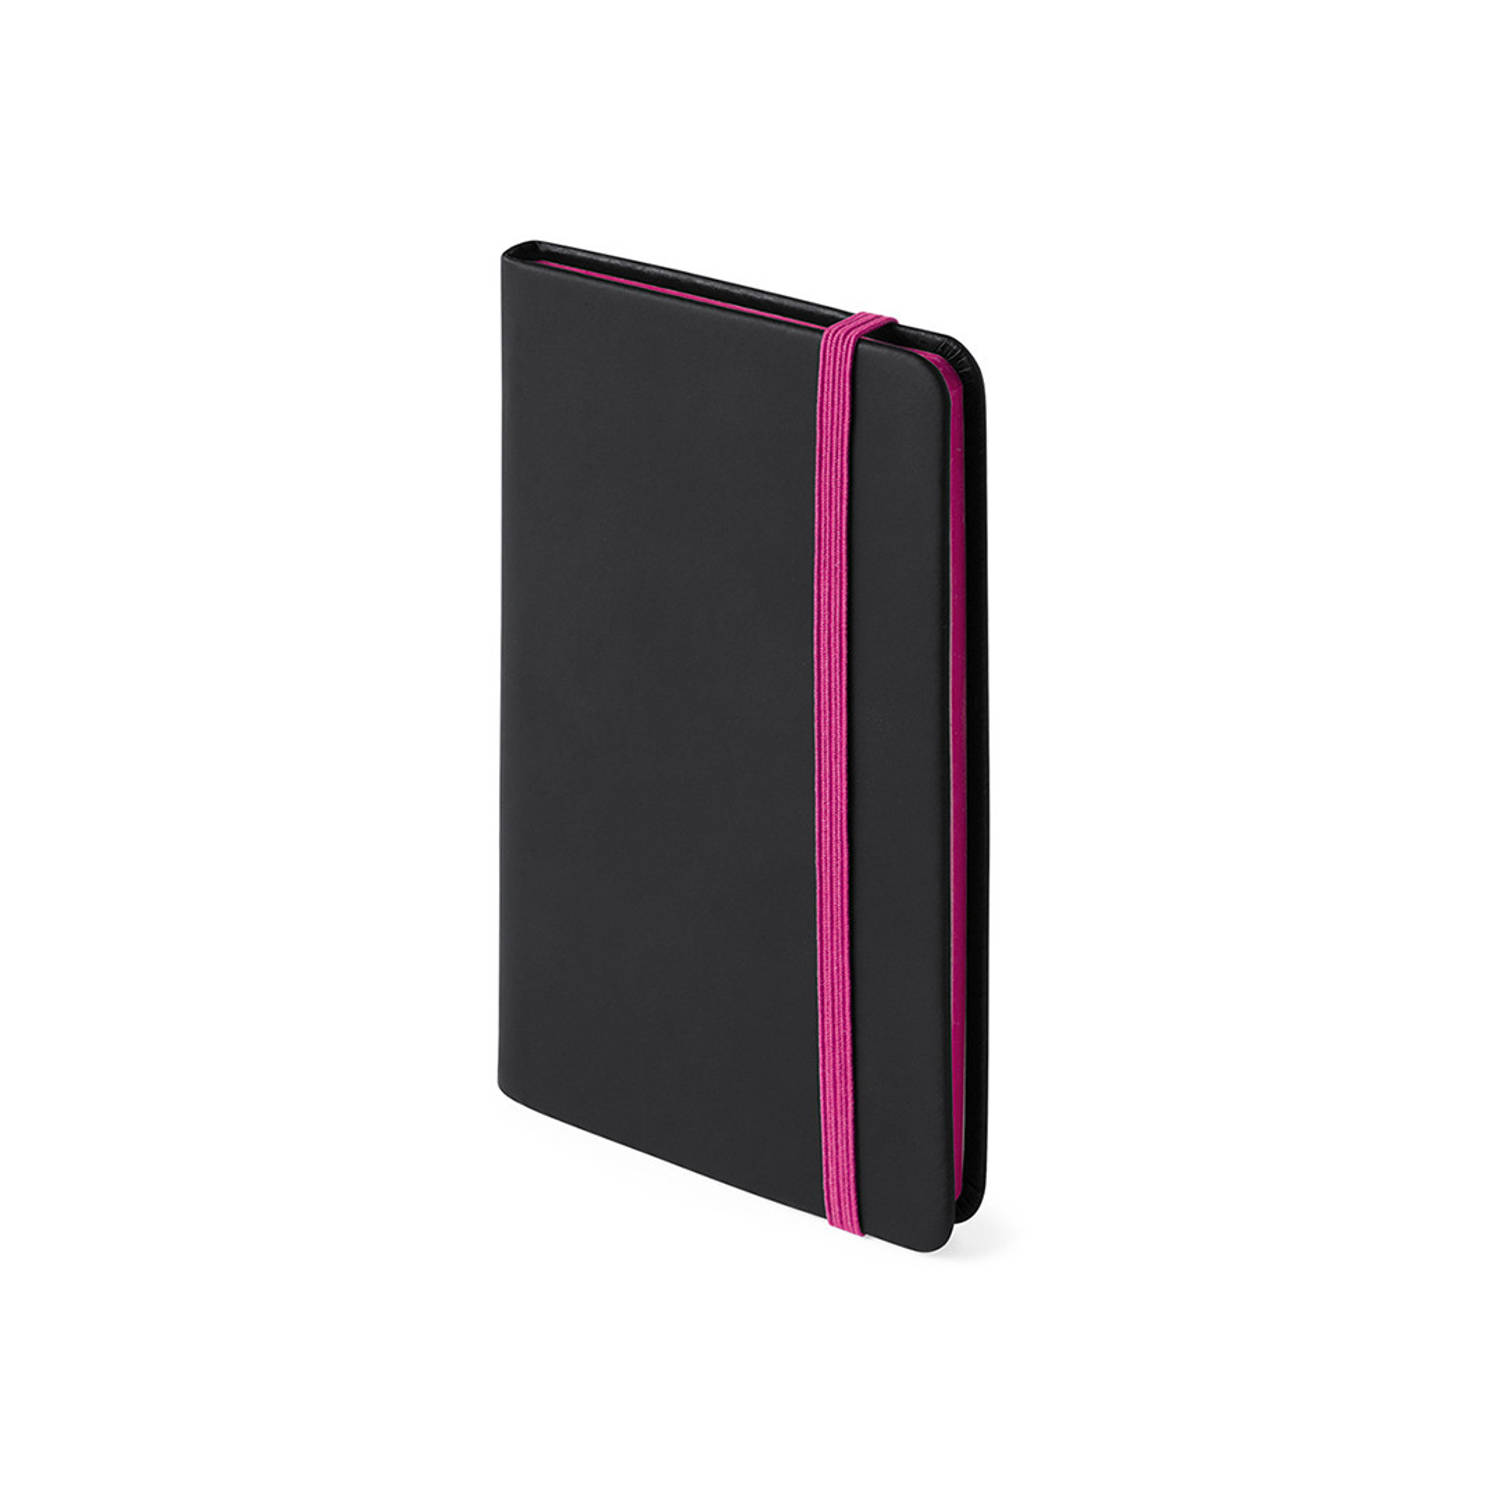 Notitieboekje met roze elastiek pu-leer kaft 9 x 14 cm - Notitieboek